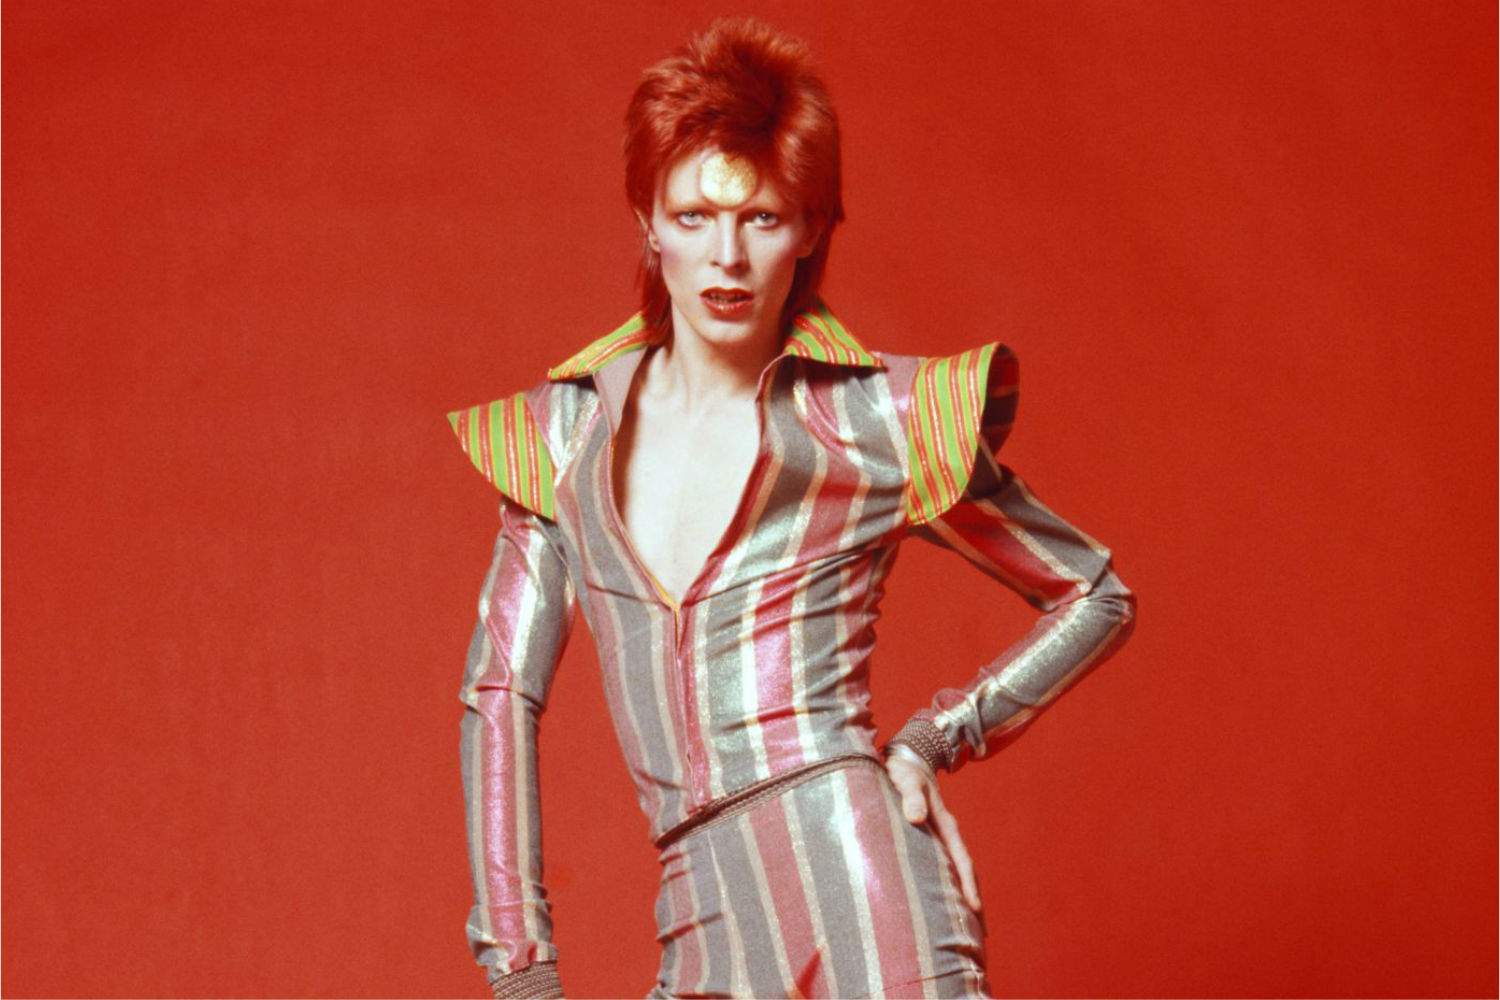 David Bowie: Sınır aşımı ve performativite | Kaos GL - LGBTİ+ Haber Portalı Gökkuşağı Forumu Köşe Yazısı